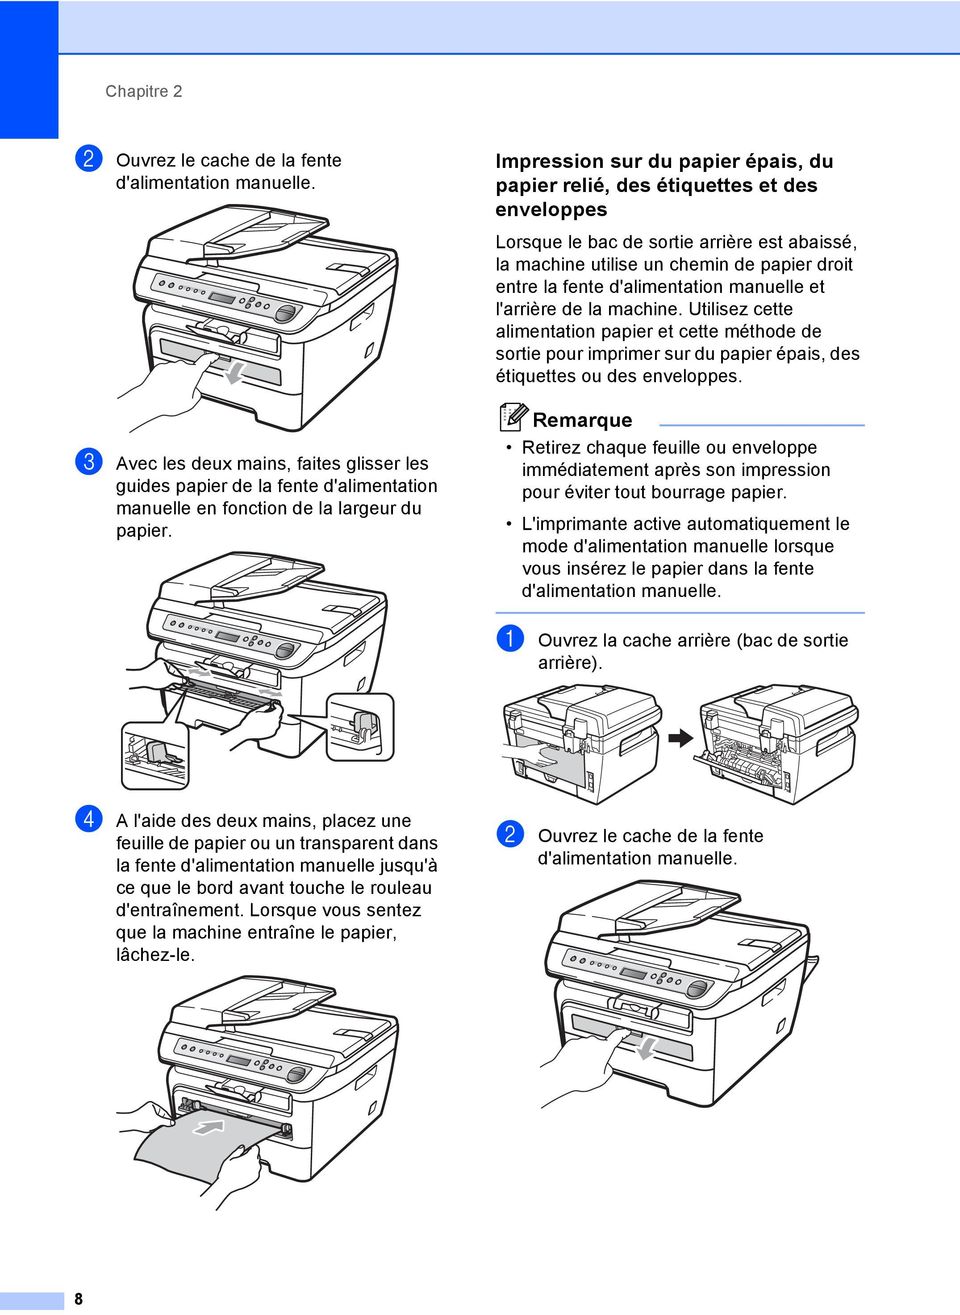 d'alimentation manuelle et l'arrière de la machine. Utilisez cette alimentation papier et cette méthode de sortie pour imprimer sur du papier épais, des étiquettes ou des enveloppes.